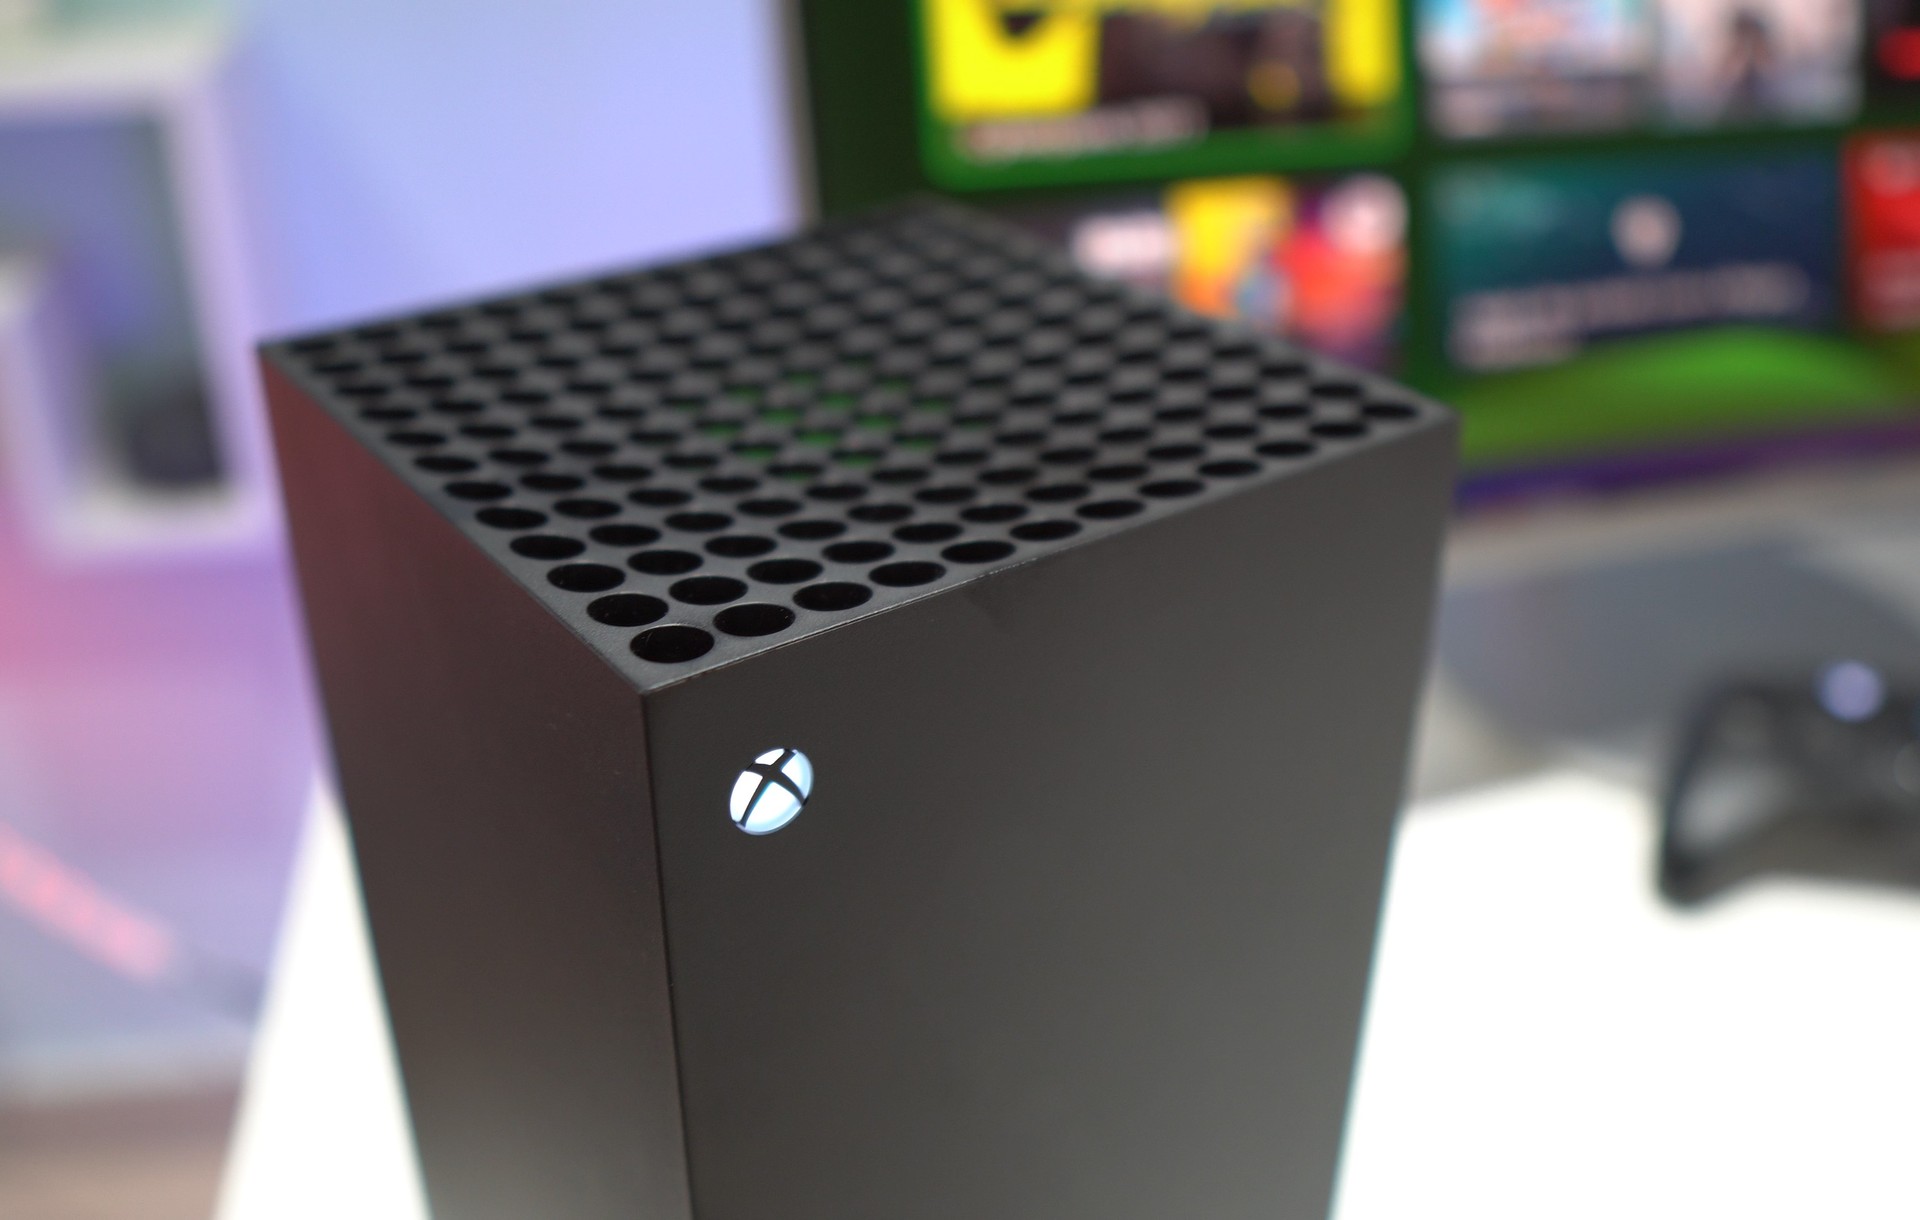 Próxima semana no Xbox: 6 a 10 de dezembro - Xbox Wire em Português